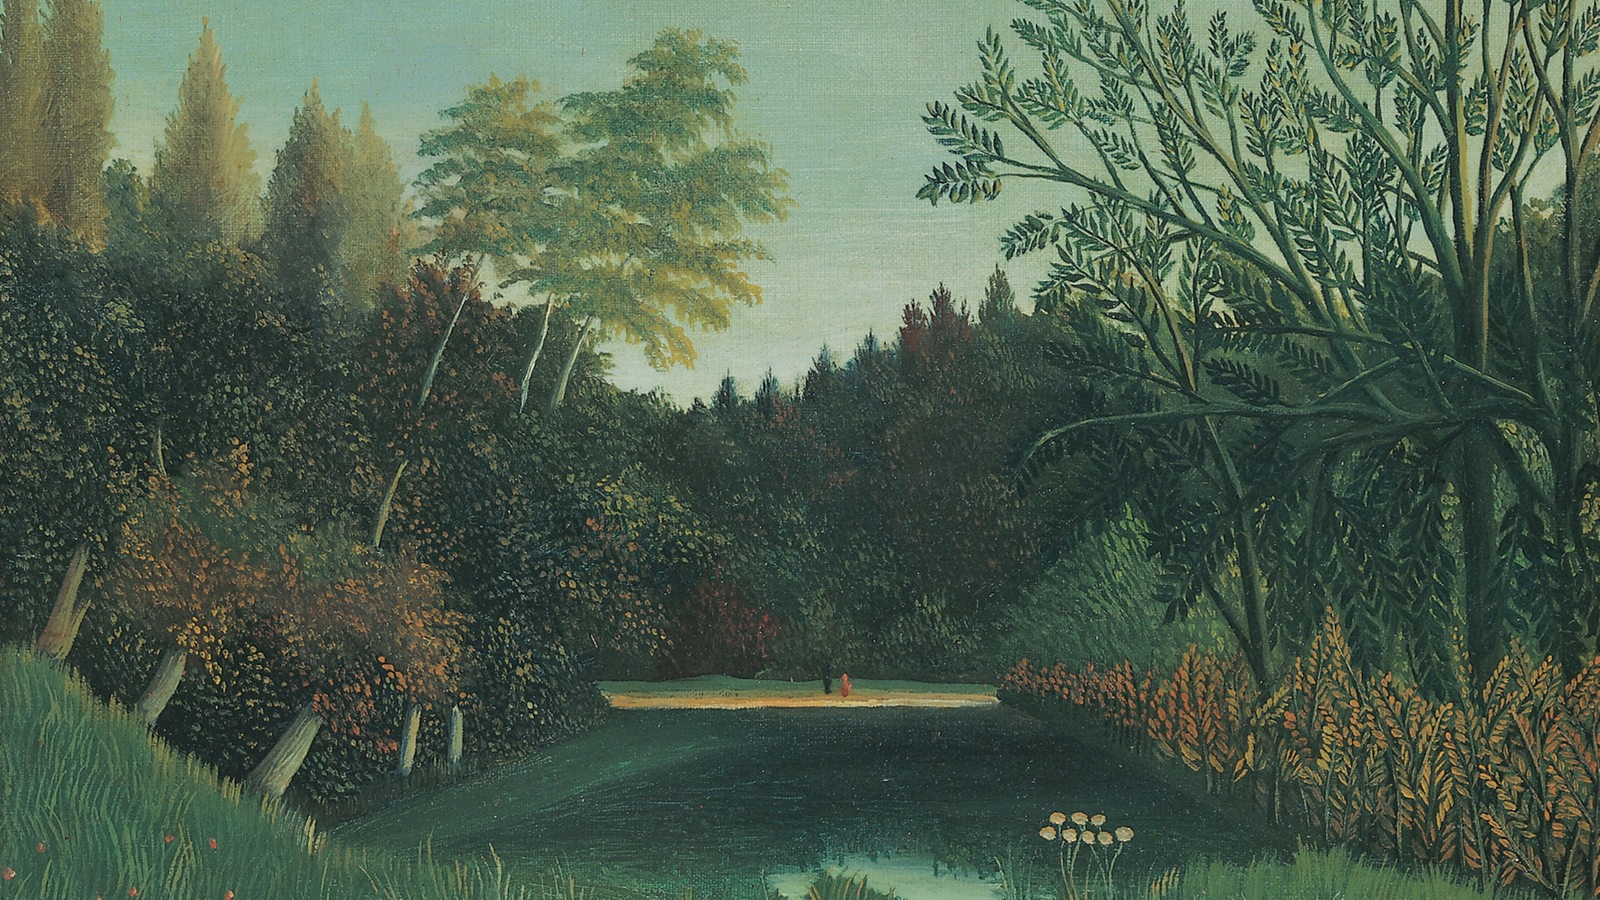 Waldlandschaft mit Blumenwiese, See, Bäumen und Menschen am Ufer